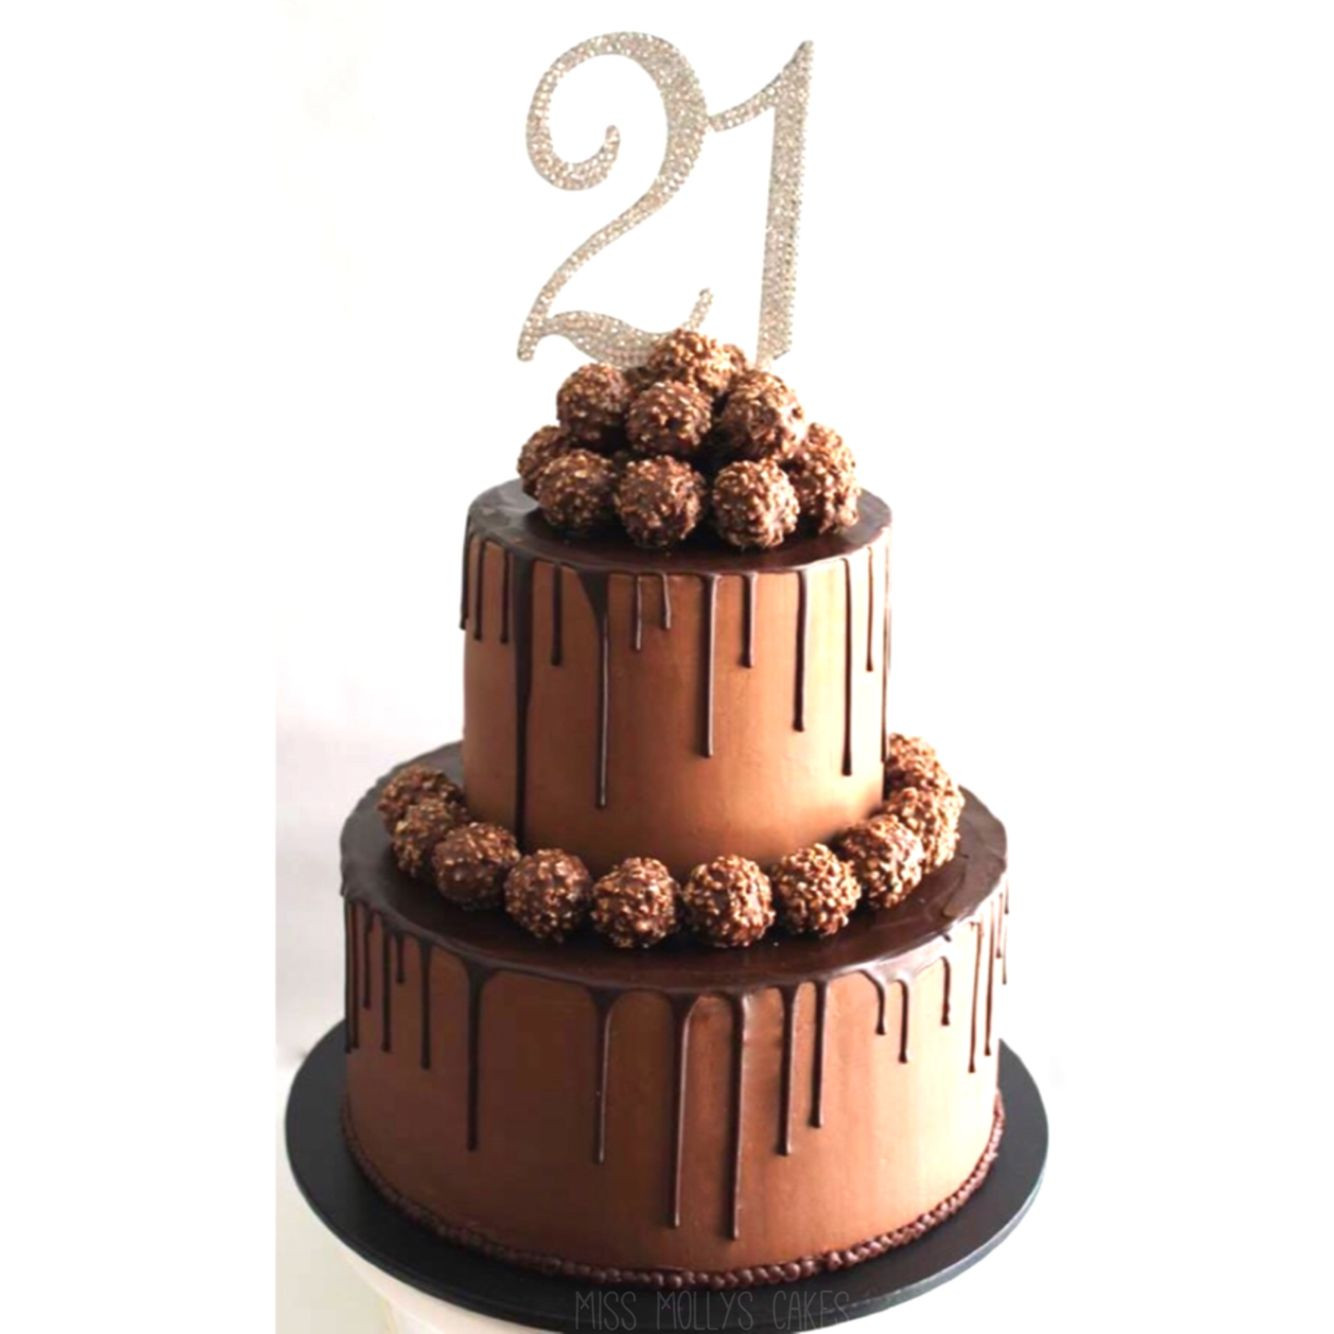 21st Birthday Cake Decorations
 21st Birthday Ferrero Rocher Cake missmollyscakes